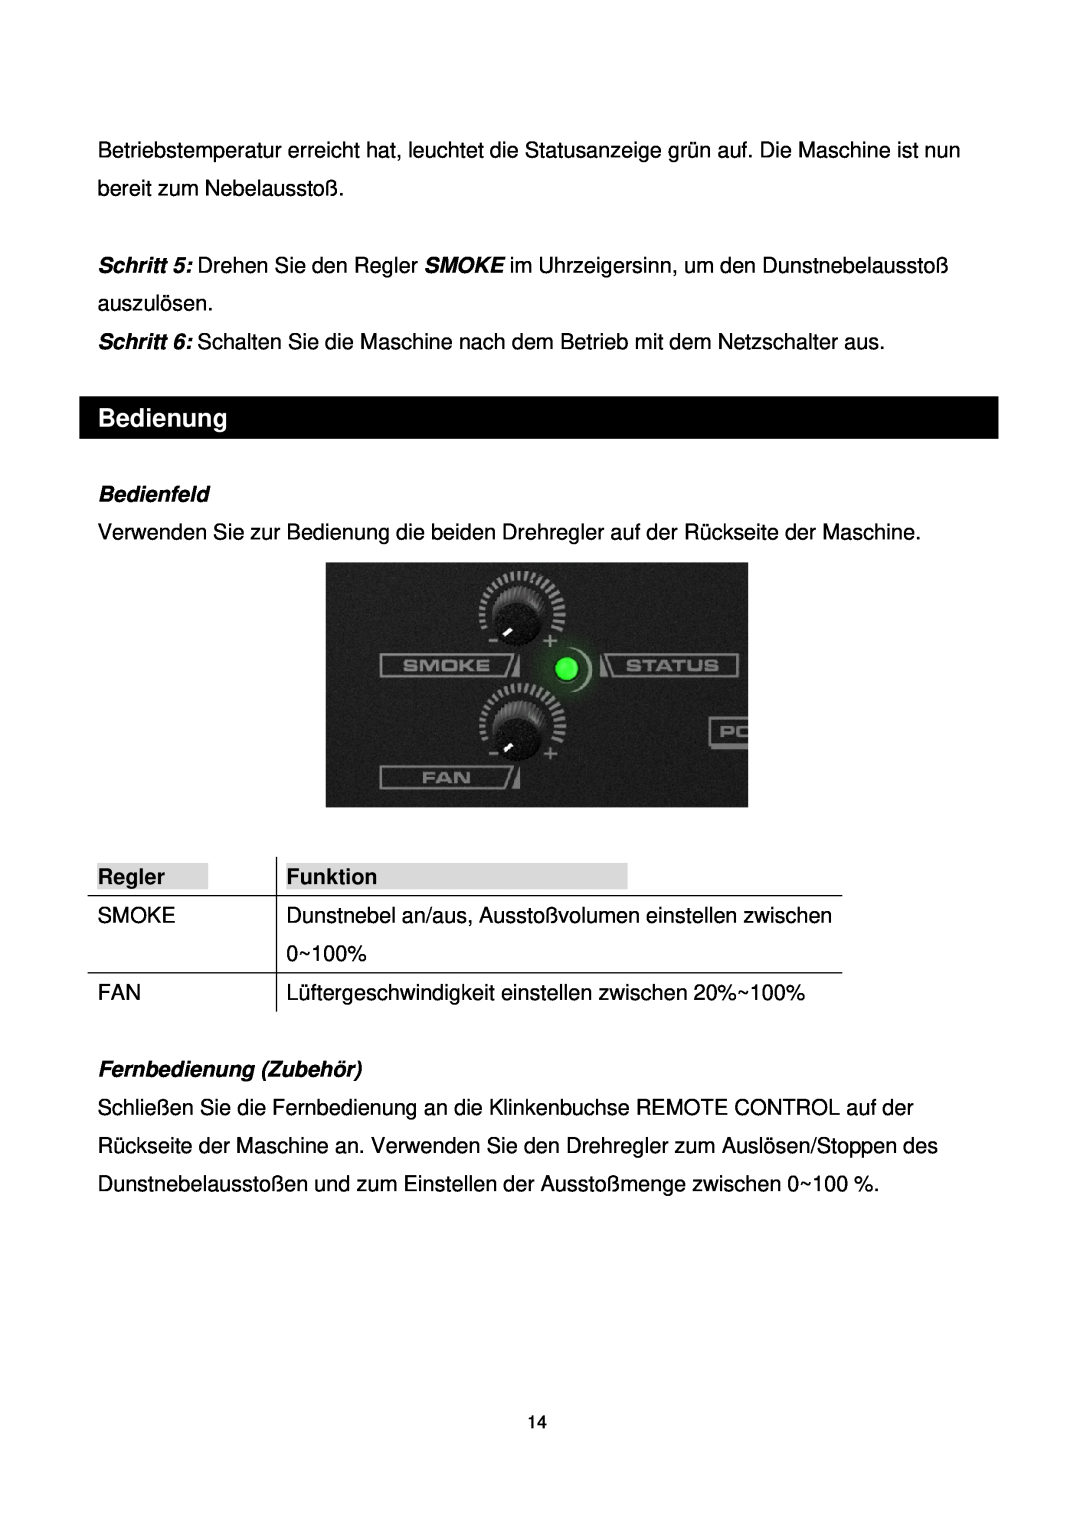 Antari Lighting and Effects Z-350 user manual Bedienung, Bedienfeld, Regler, Funktion, Fernbedienung Zubehör 